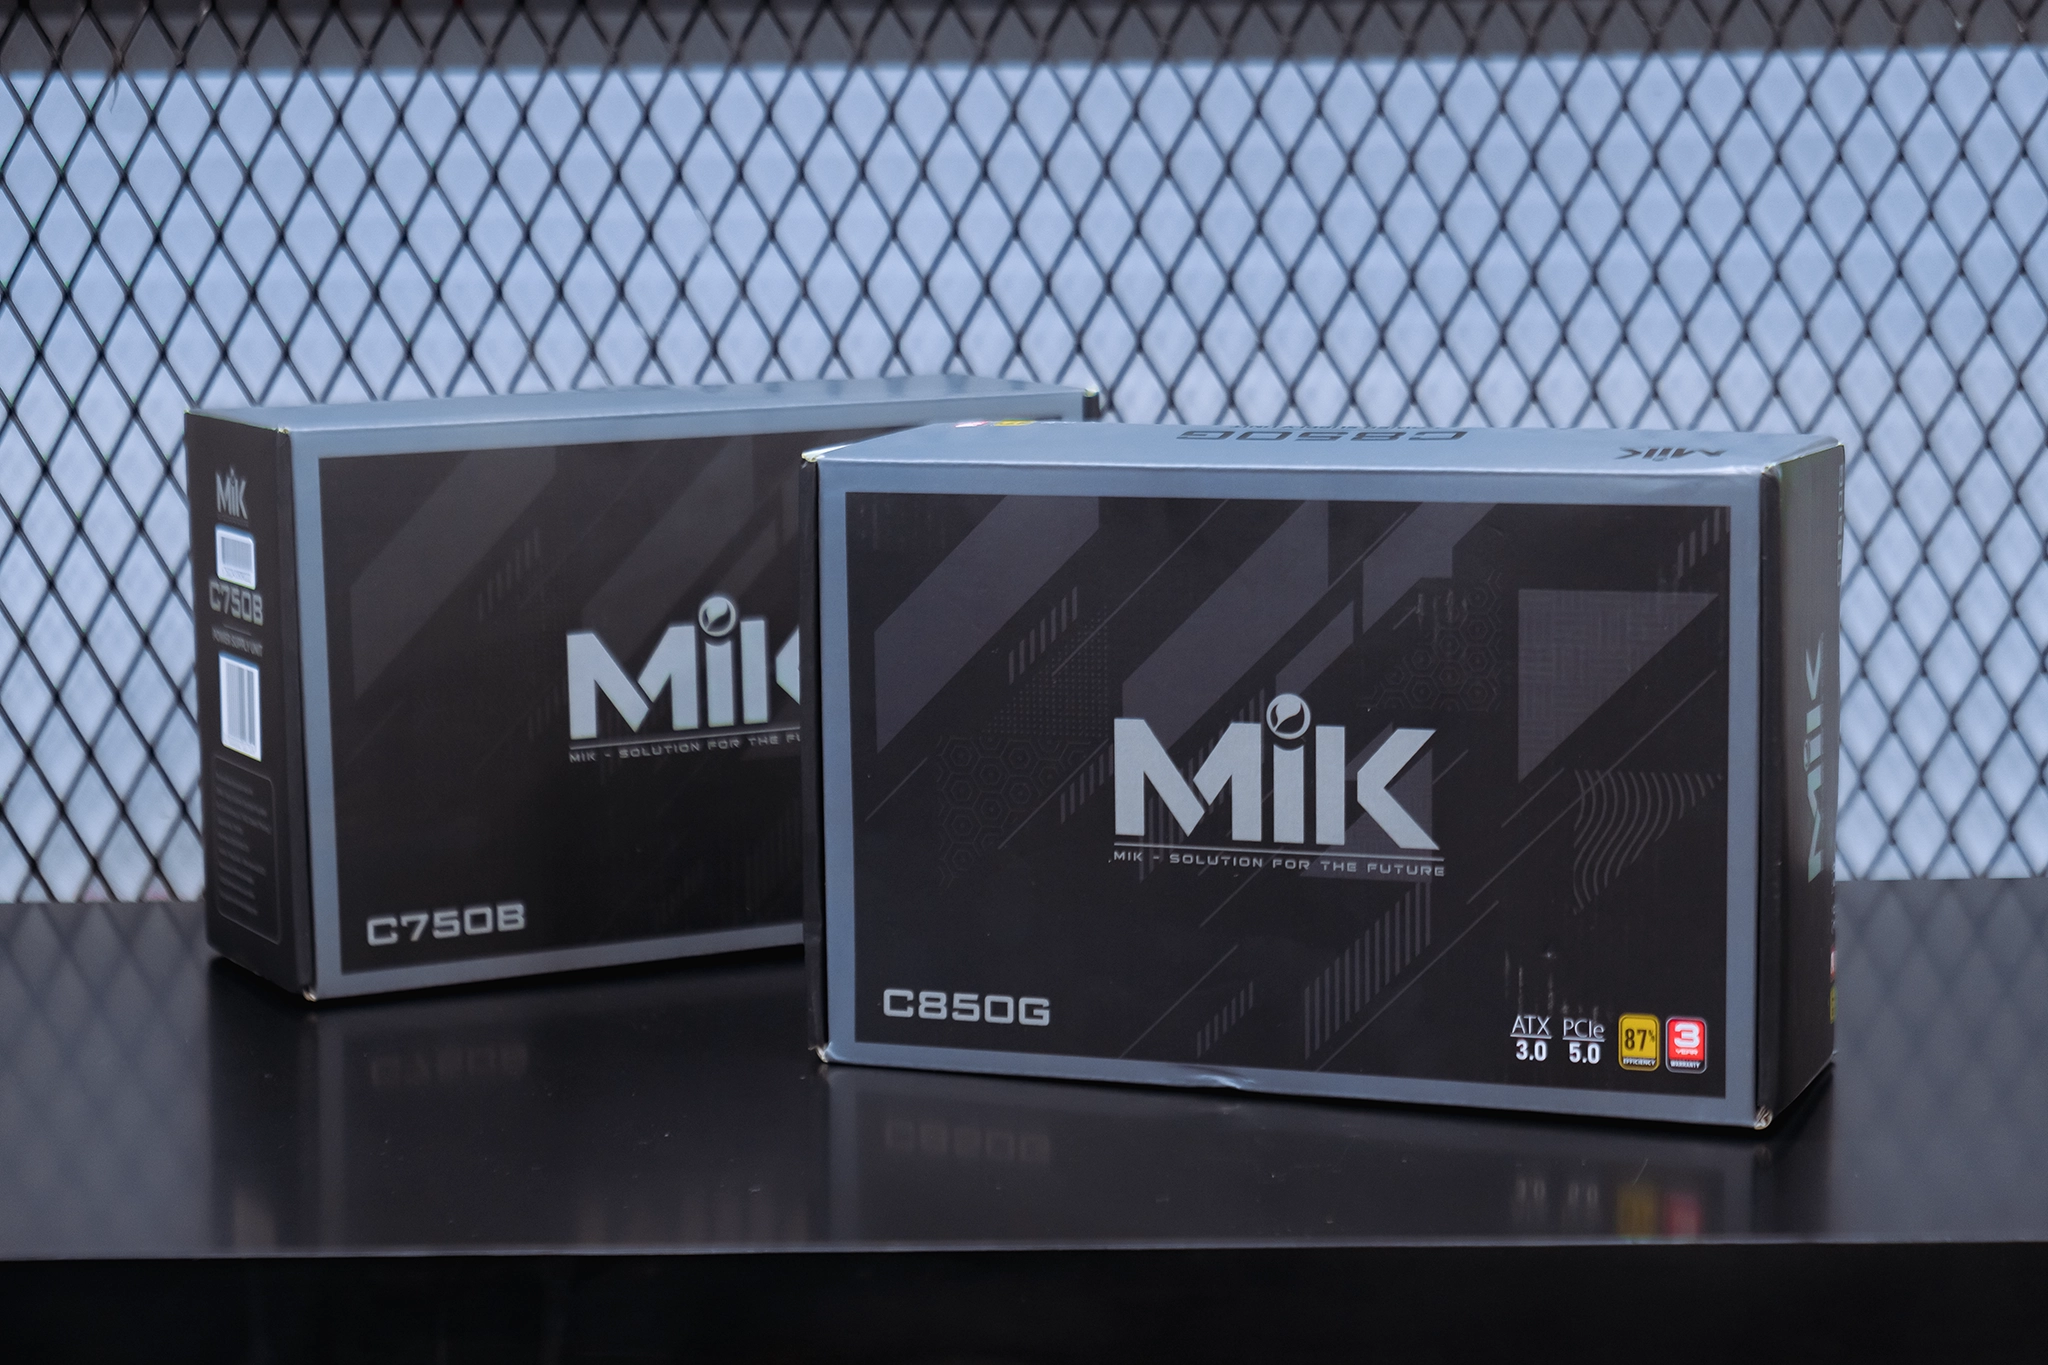 MIK ra mắt hai mẫu nguồn máy tính mới nhất C750B và C850G